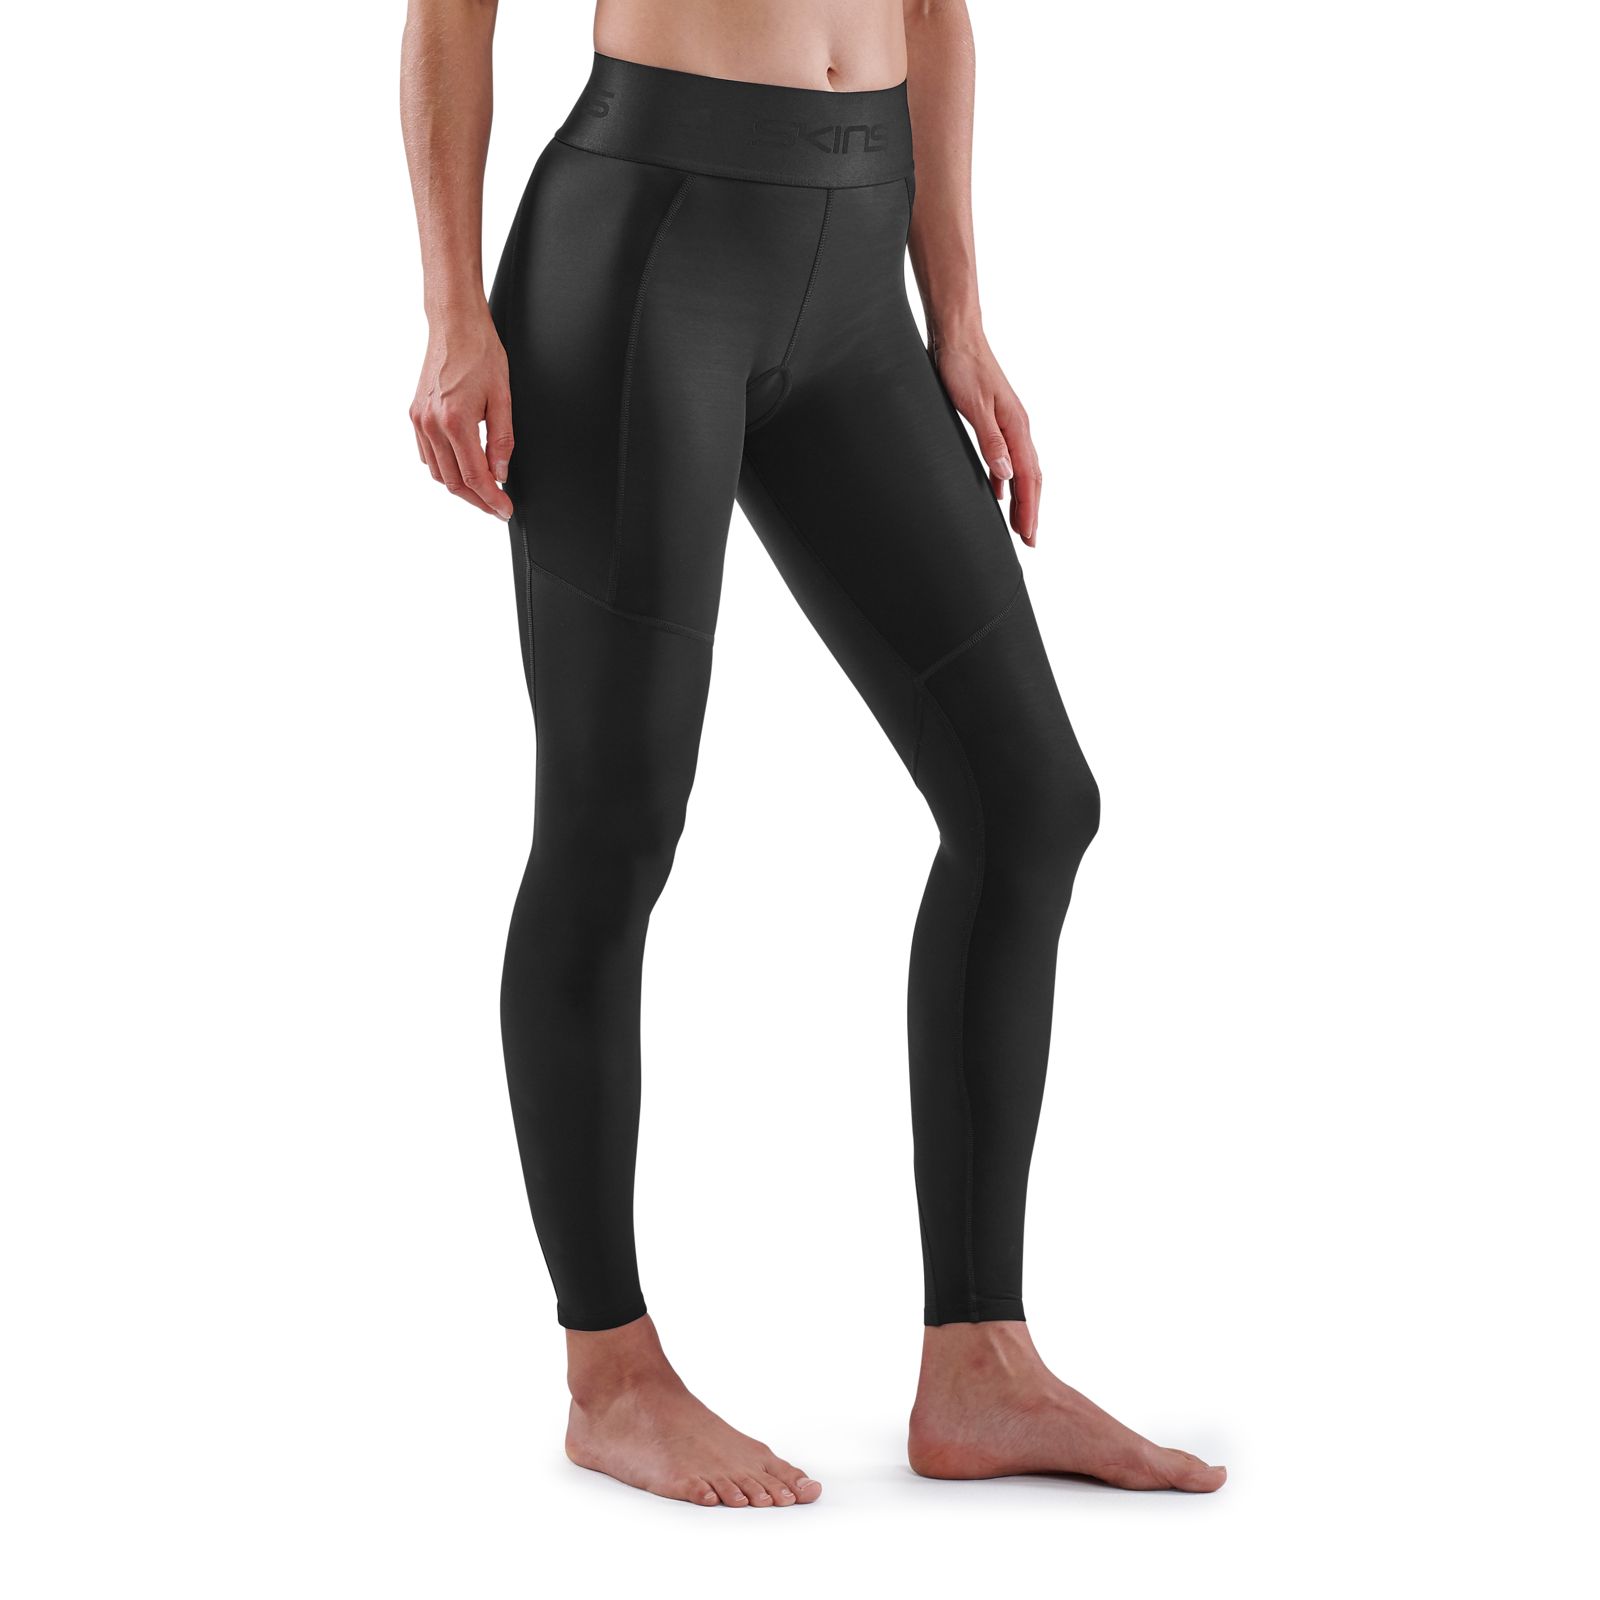 Ladies/Women's Thermal Leggings in Black in 3 sizes